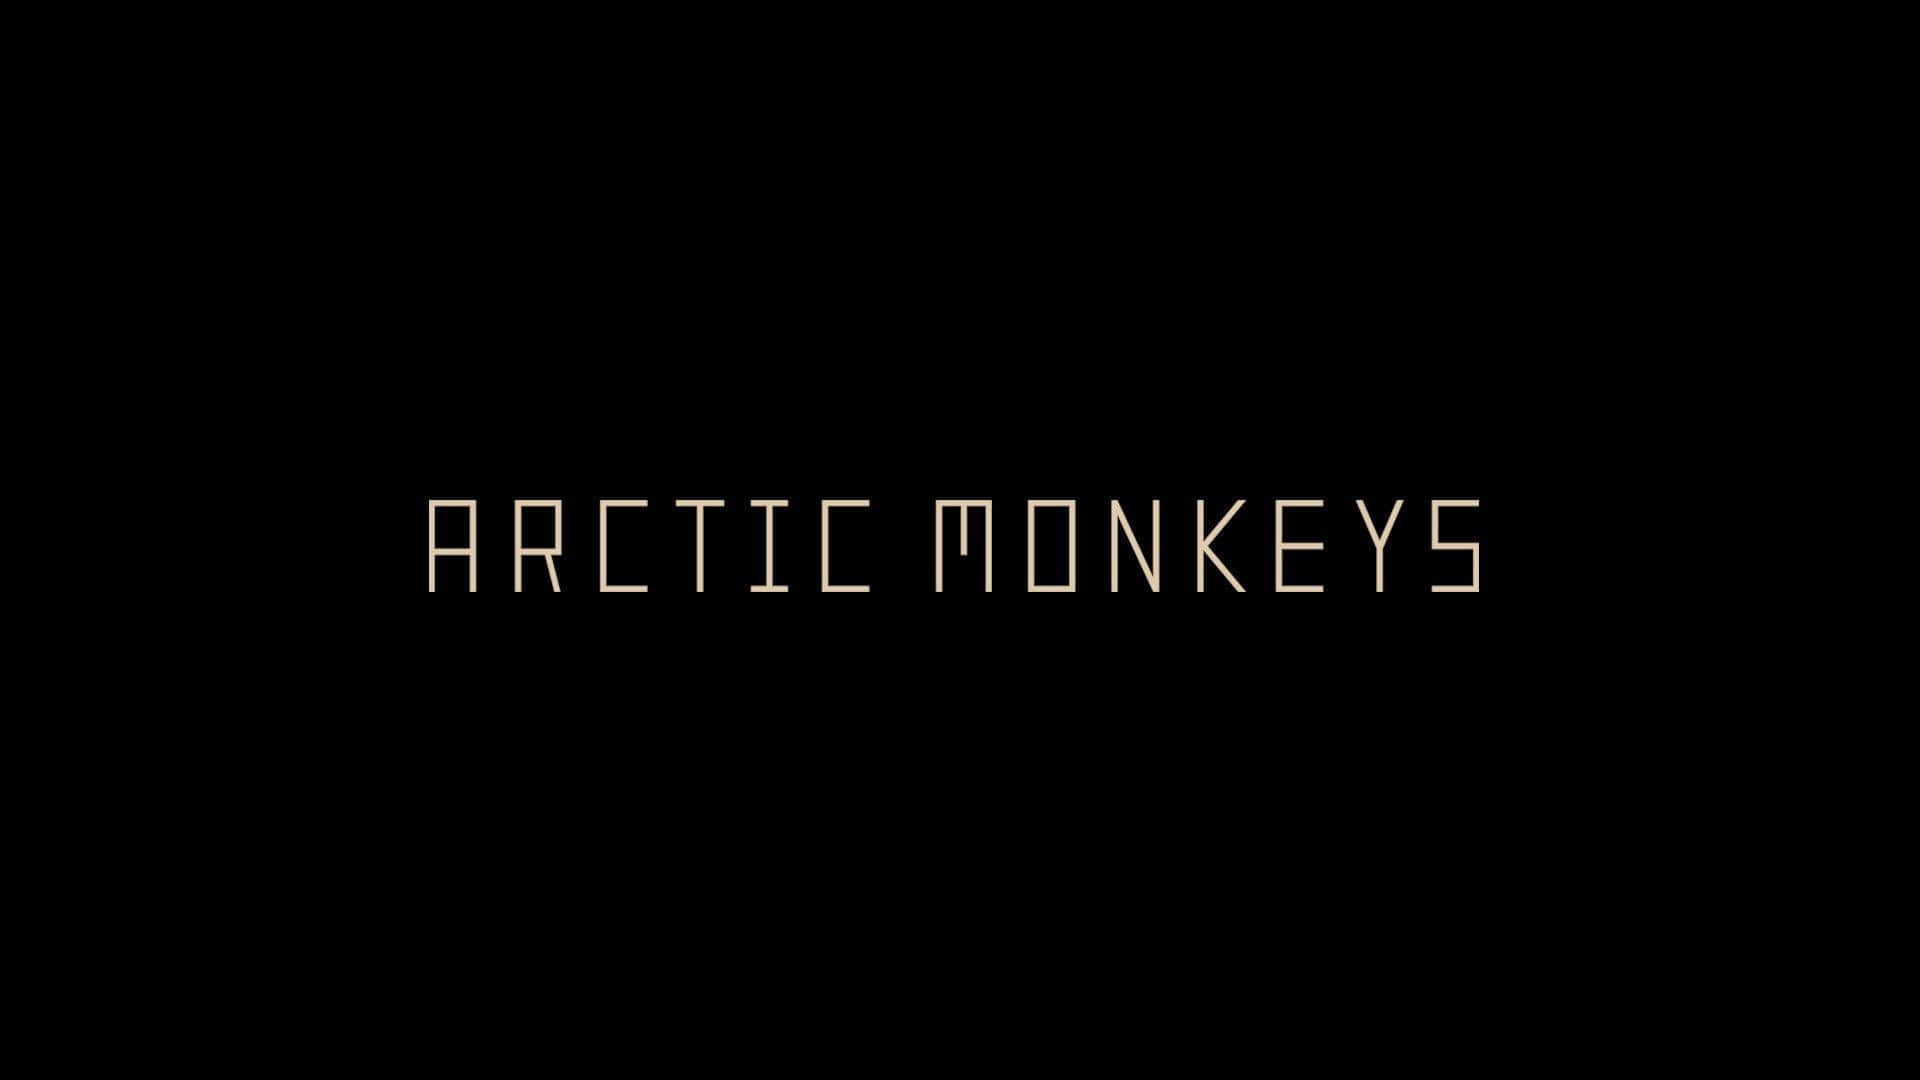 Arctic_ Monkeys_ Band_ Name_ Text